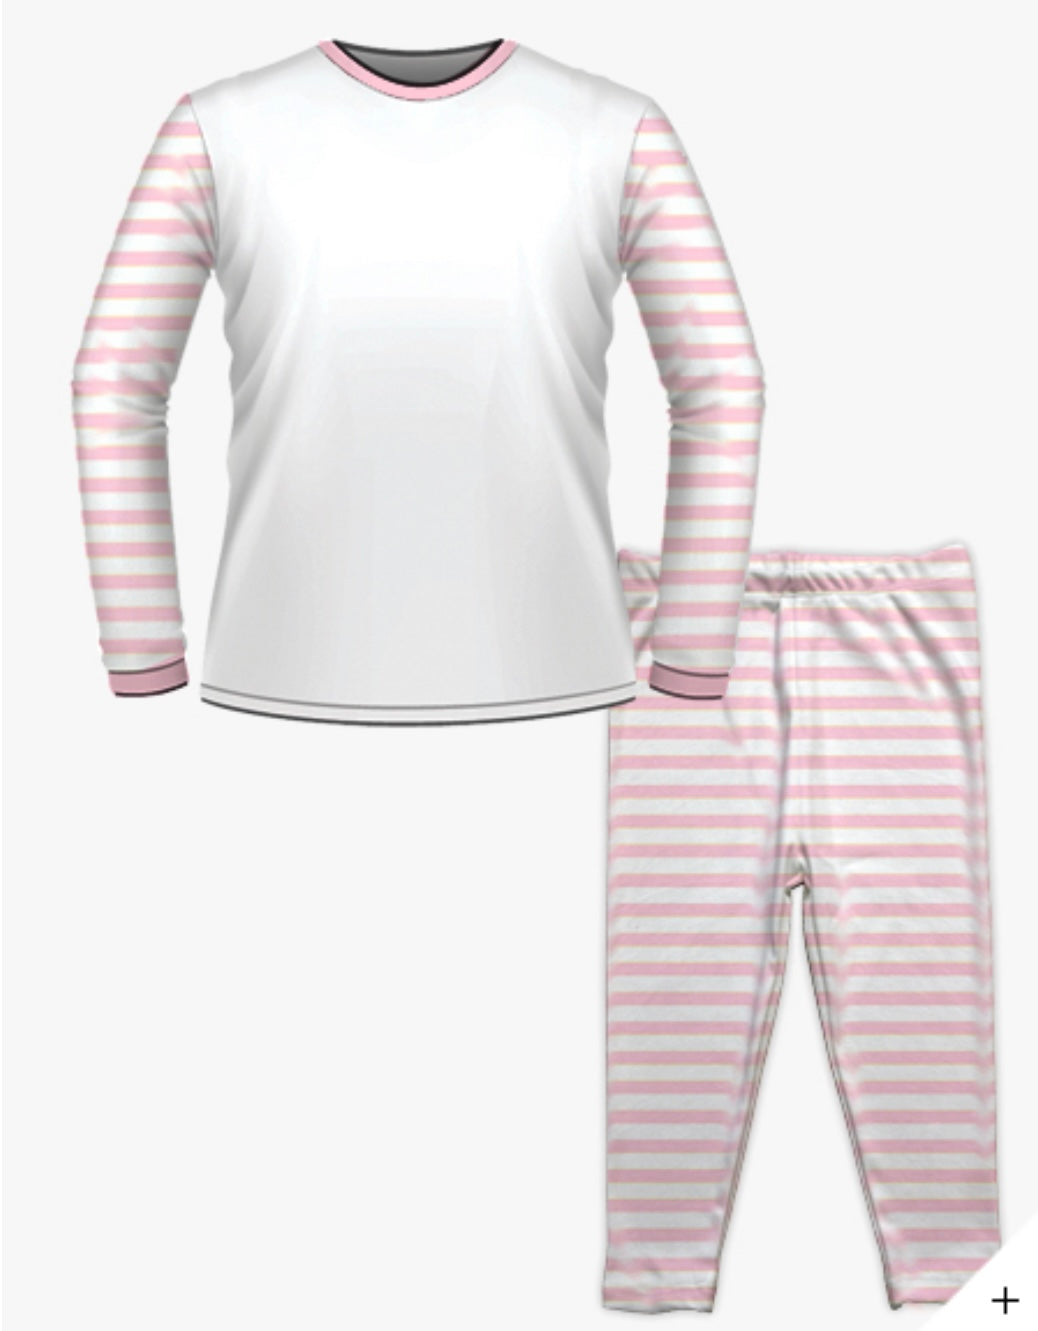 Personalised Birthday Pyjamas -  Princess Castle Design